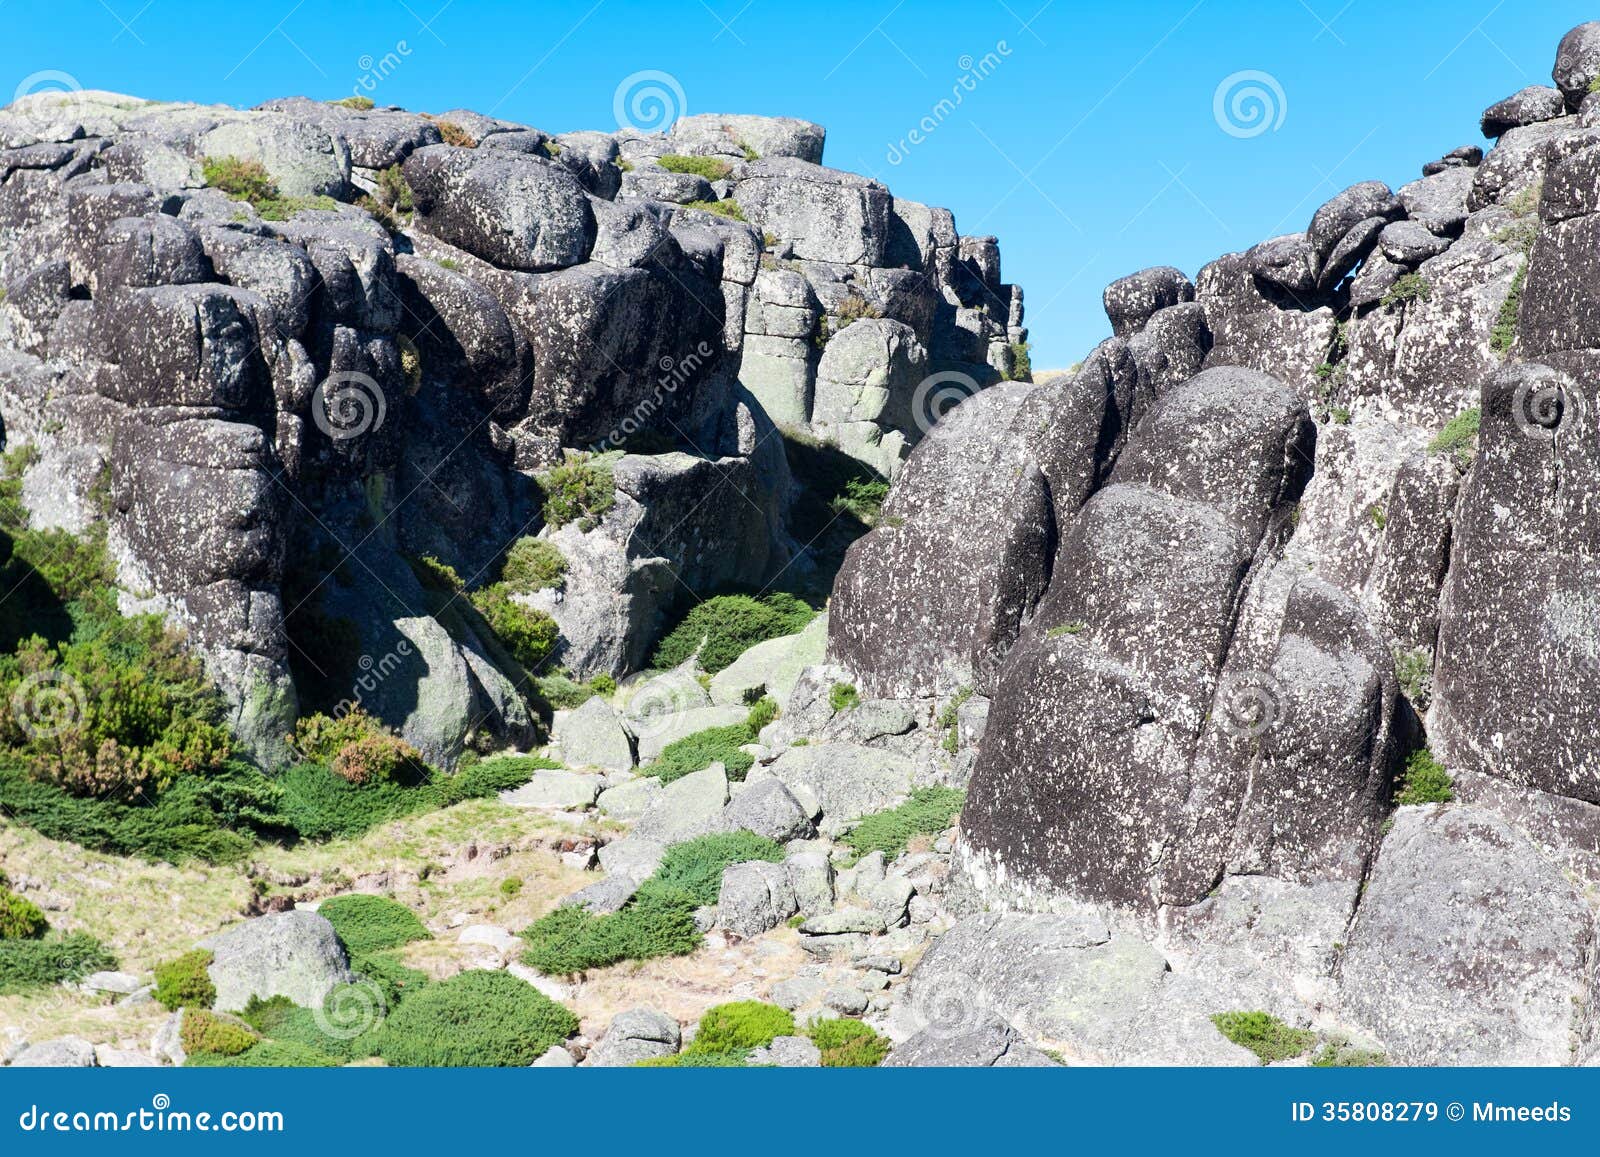 picturesque rocks serra da estrella., portugal